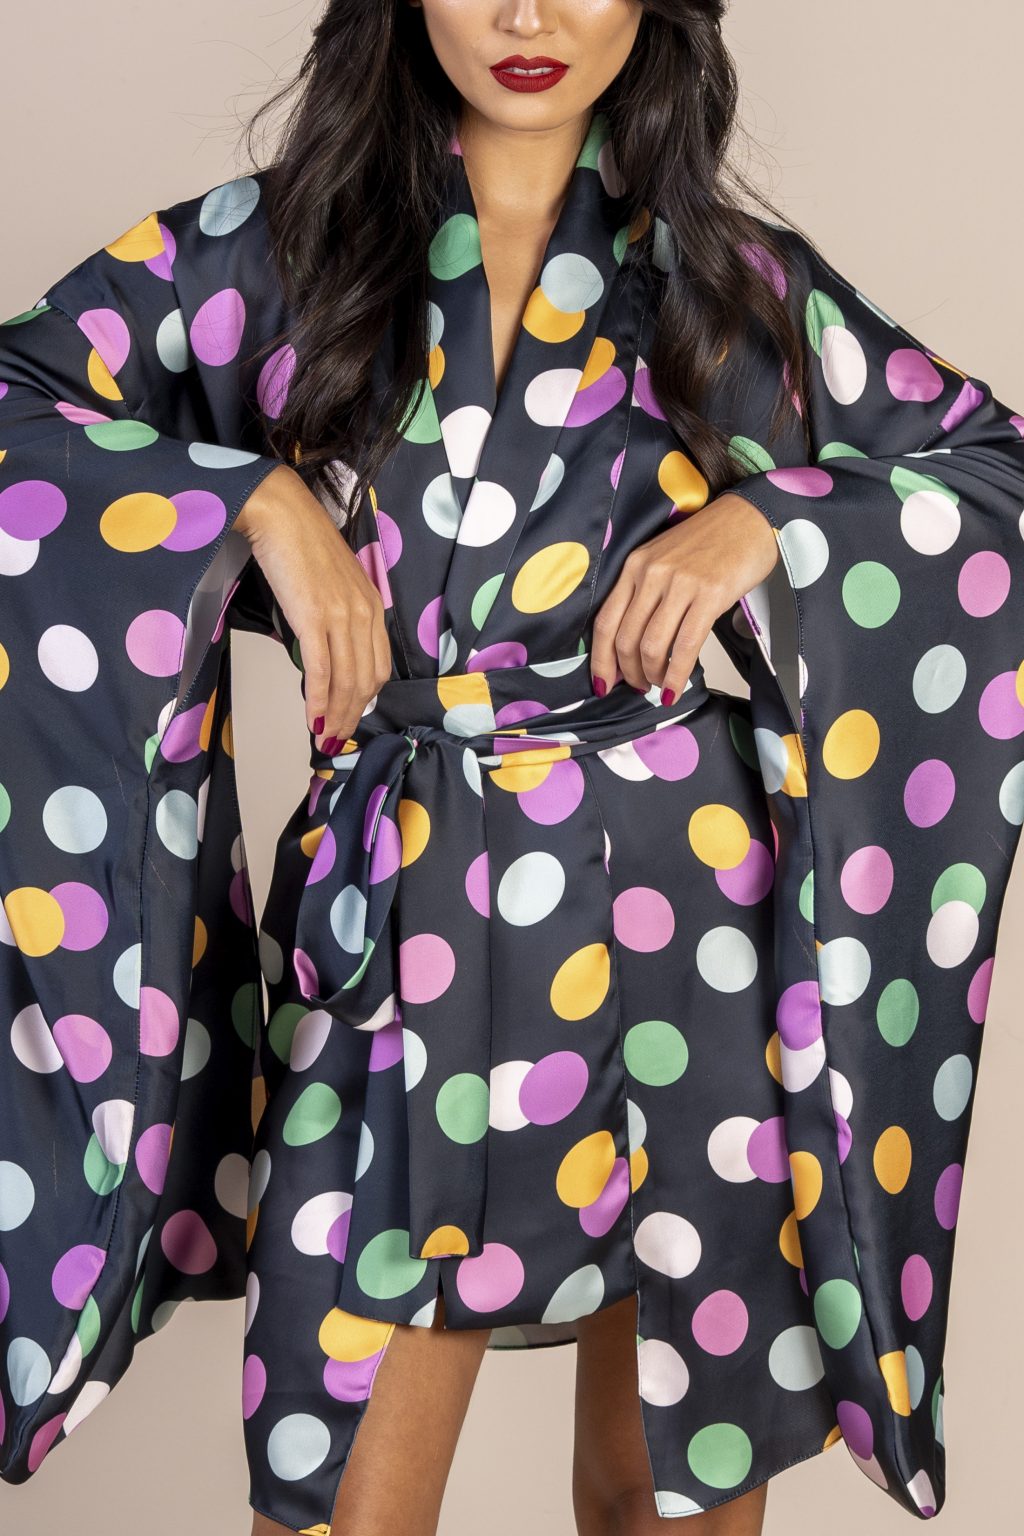 Mulher morena usando um kimono curto manga longo faixa para amarração na cintura estampa exclusiva preto com bolas coloridas conforto praticidade elegância joker maria sanz kimono quimono